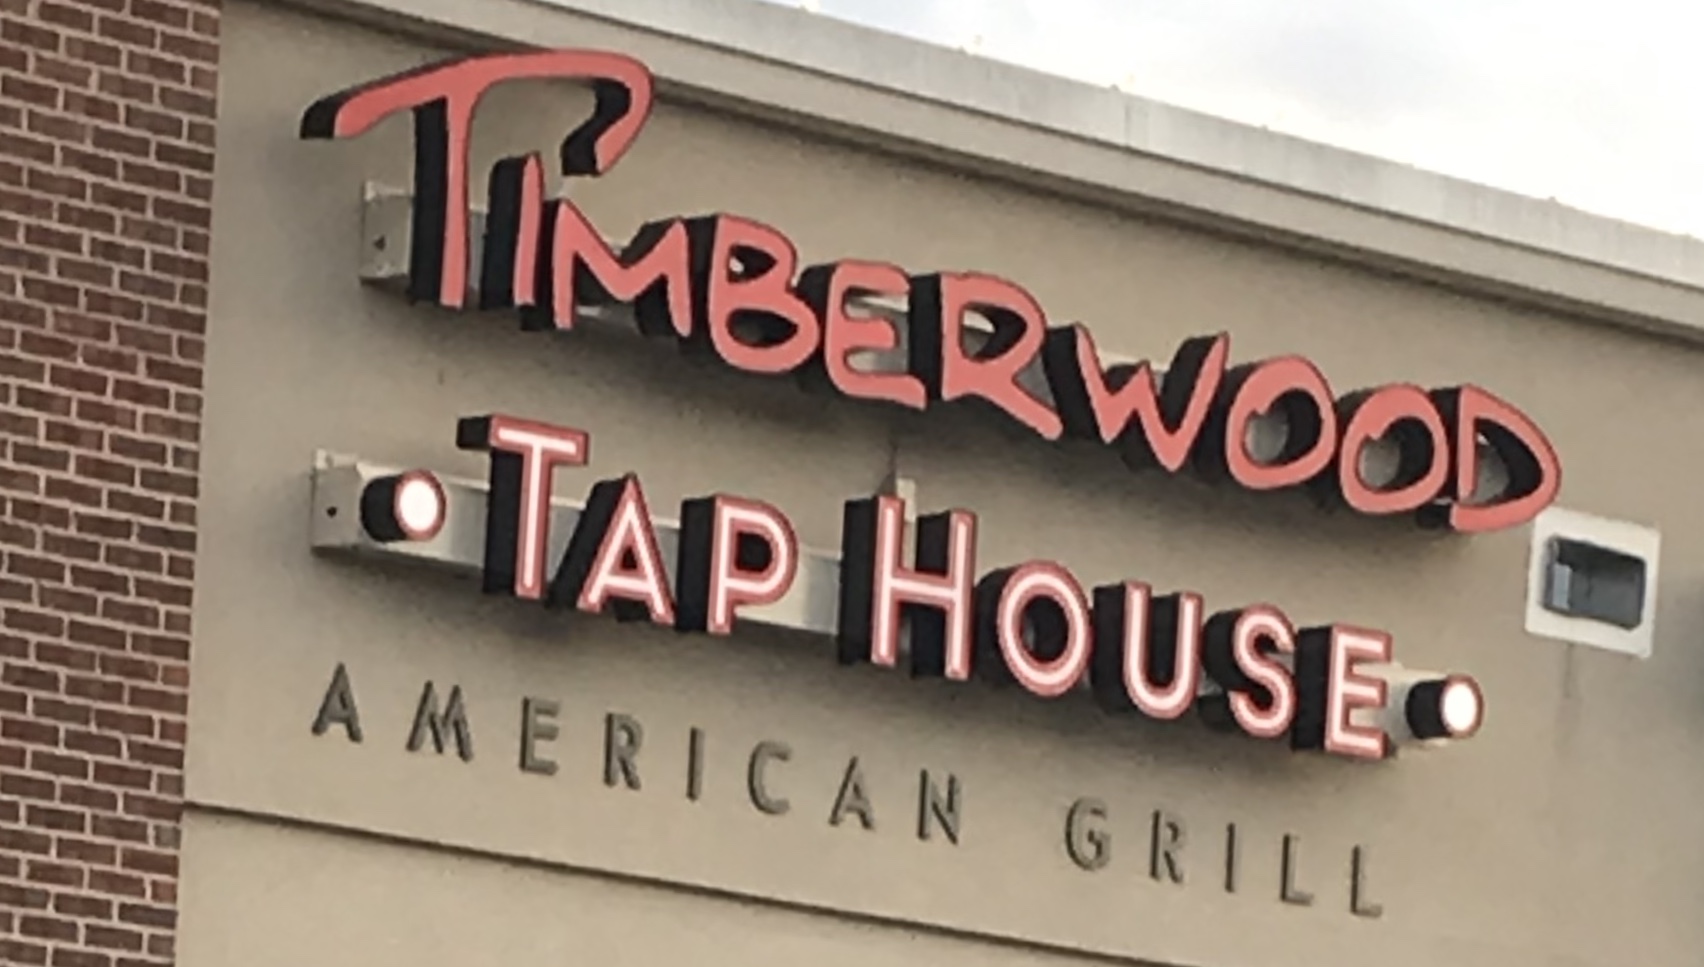 Timberwood Tap House Sign